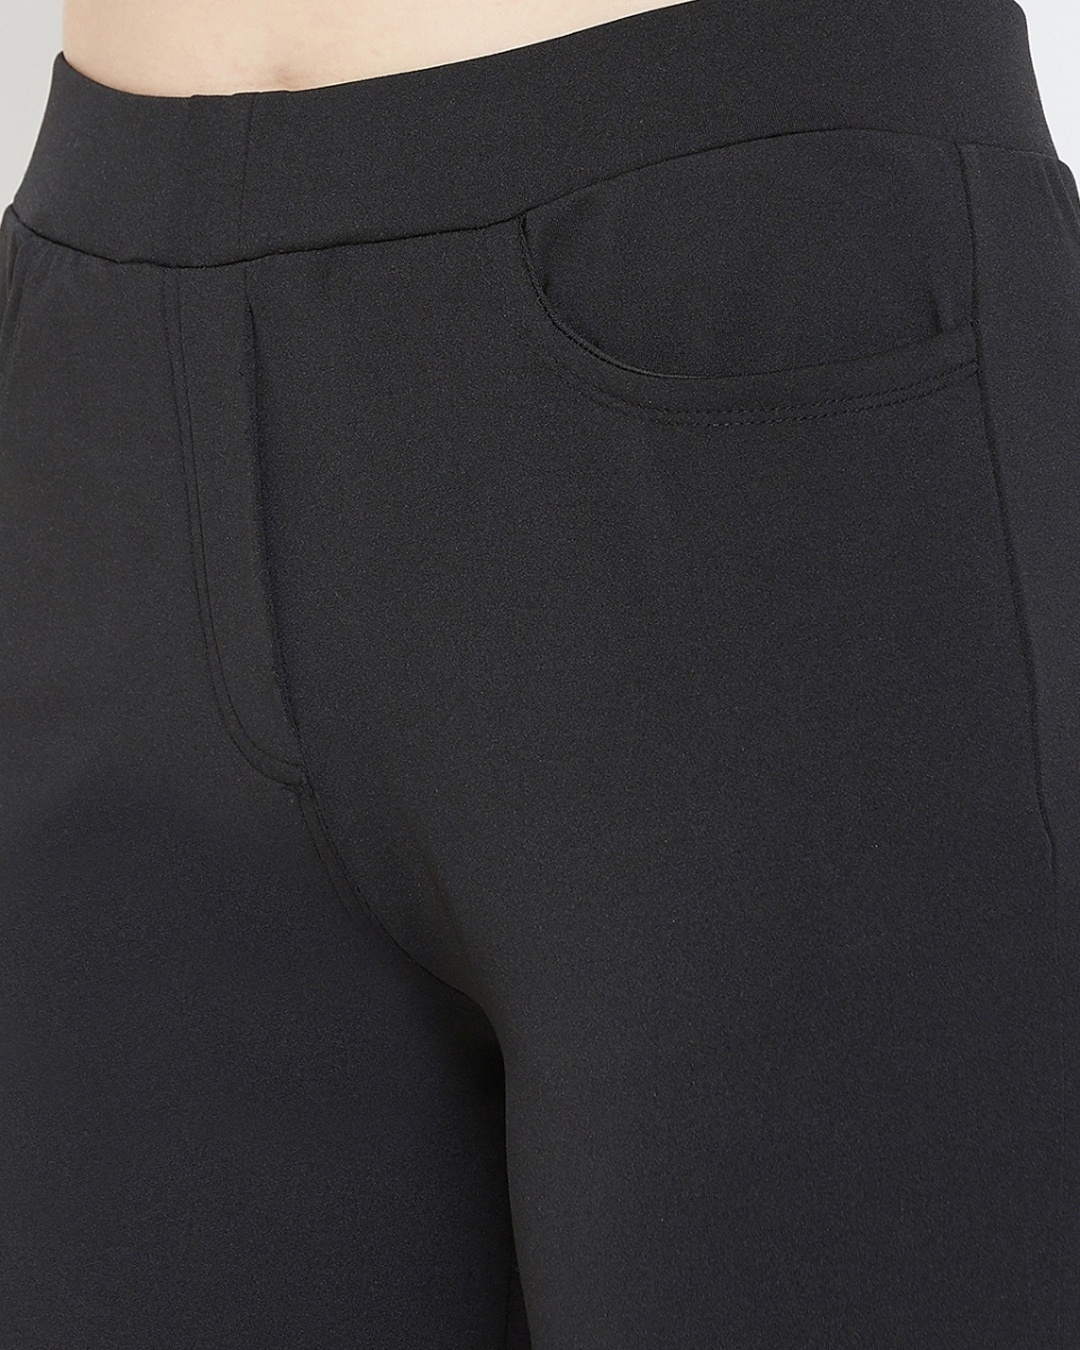 Shop Women's Black Track Pants